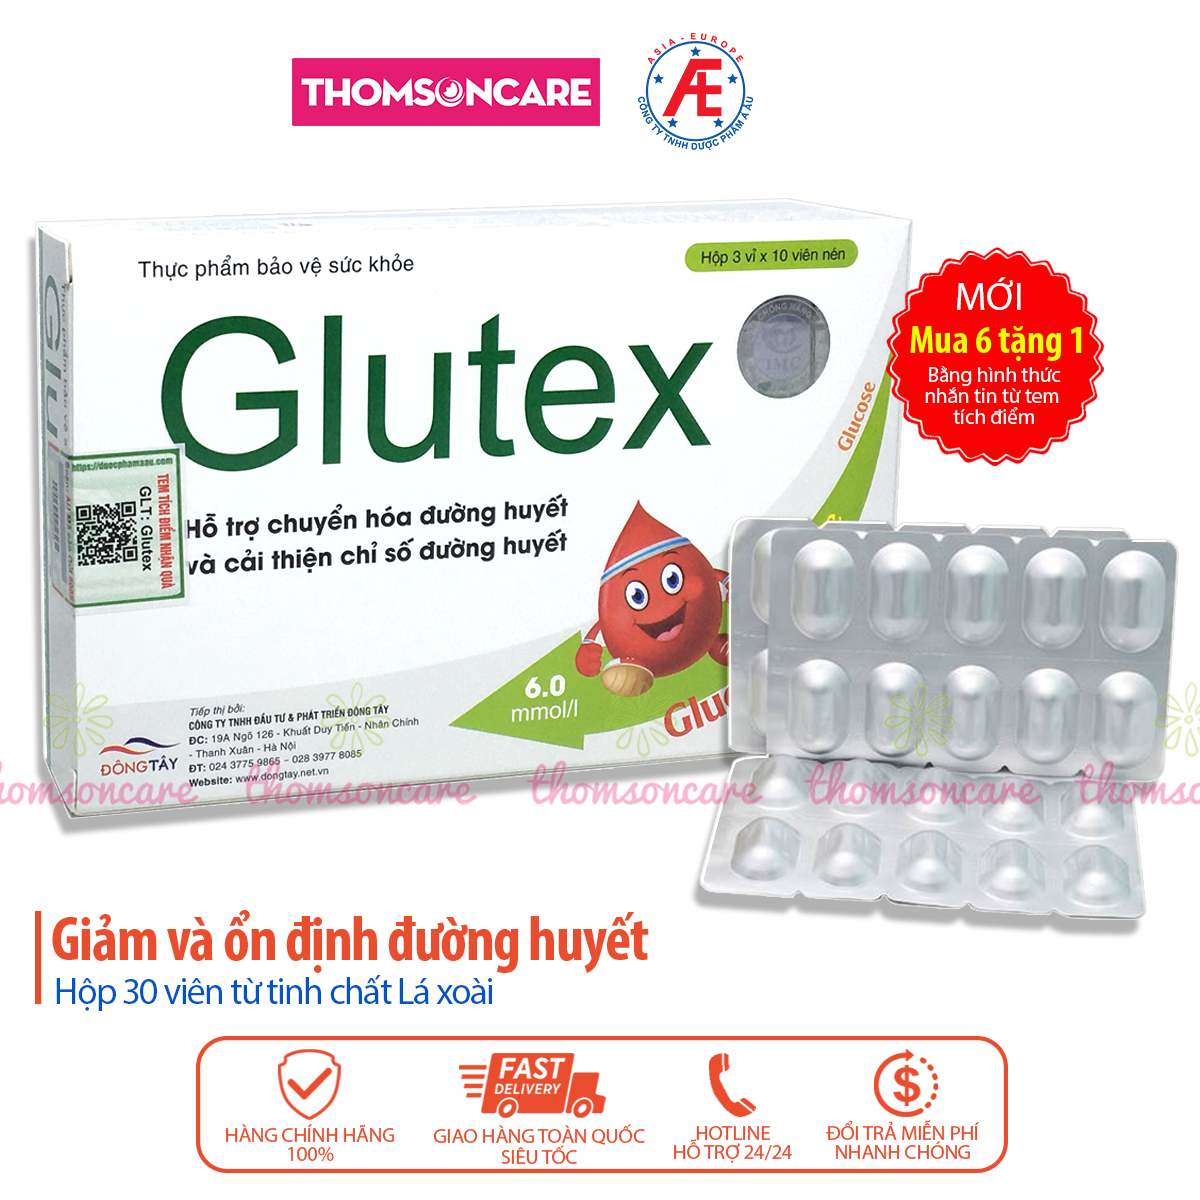 Glutex - Hỗ trợ ổn định đường huyết, giảm tiểu đường từ mướp đắng